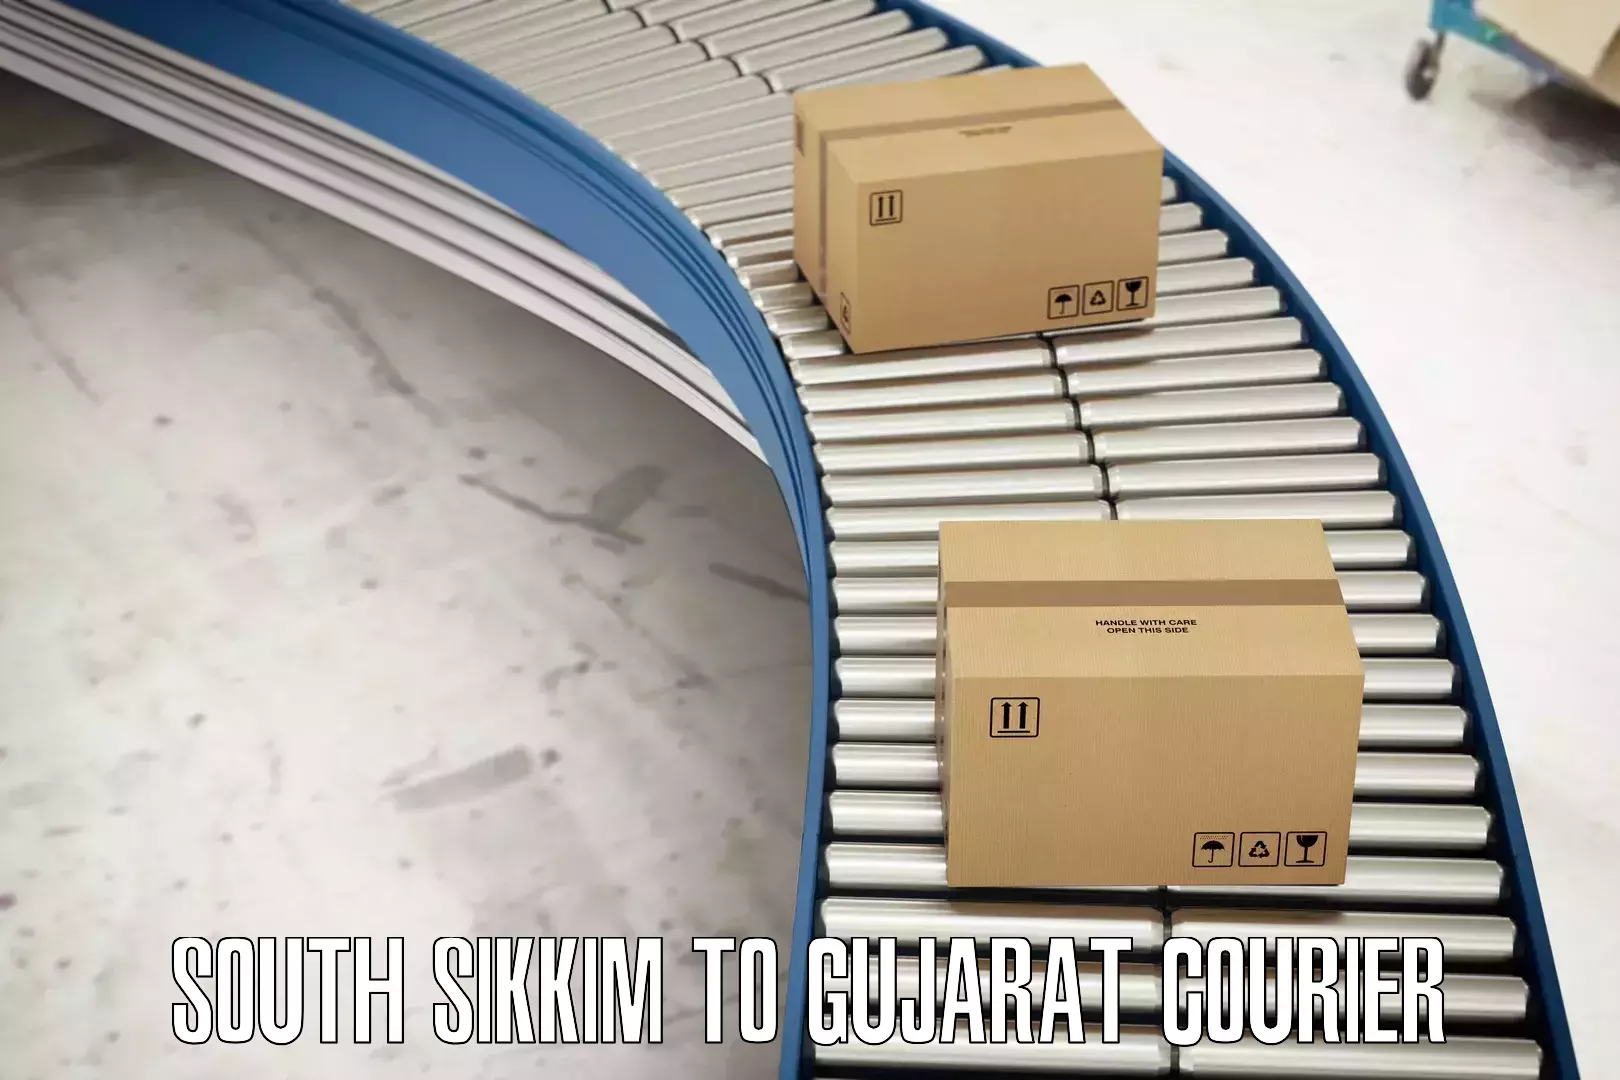 Door-to-door freight service South Sikkim to Gujarat